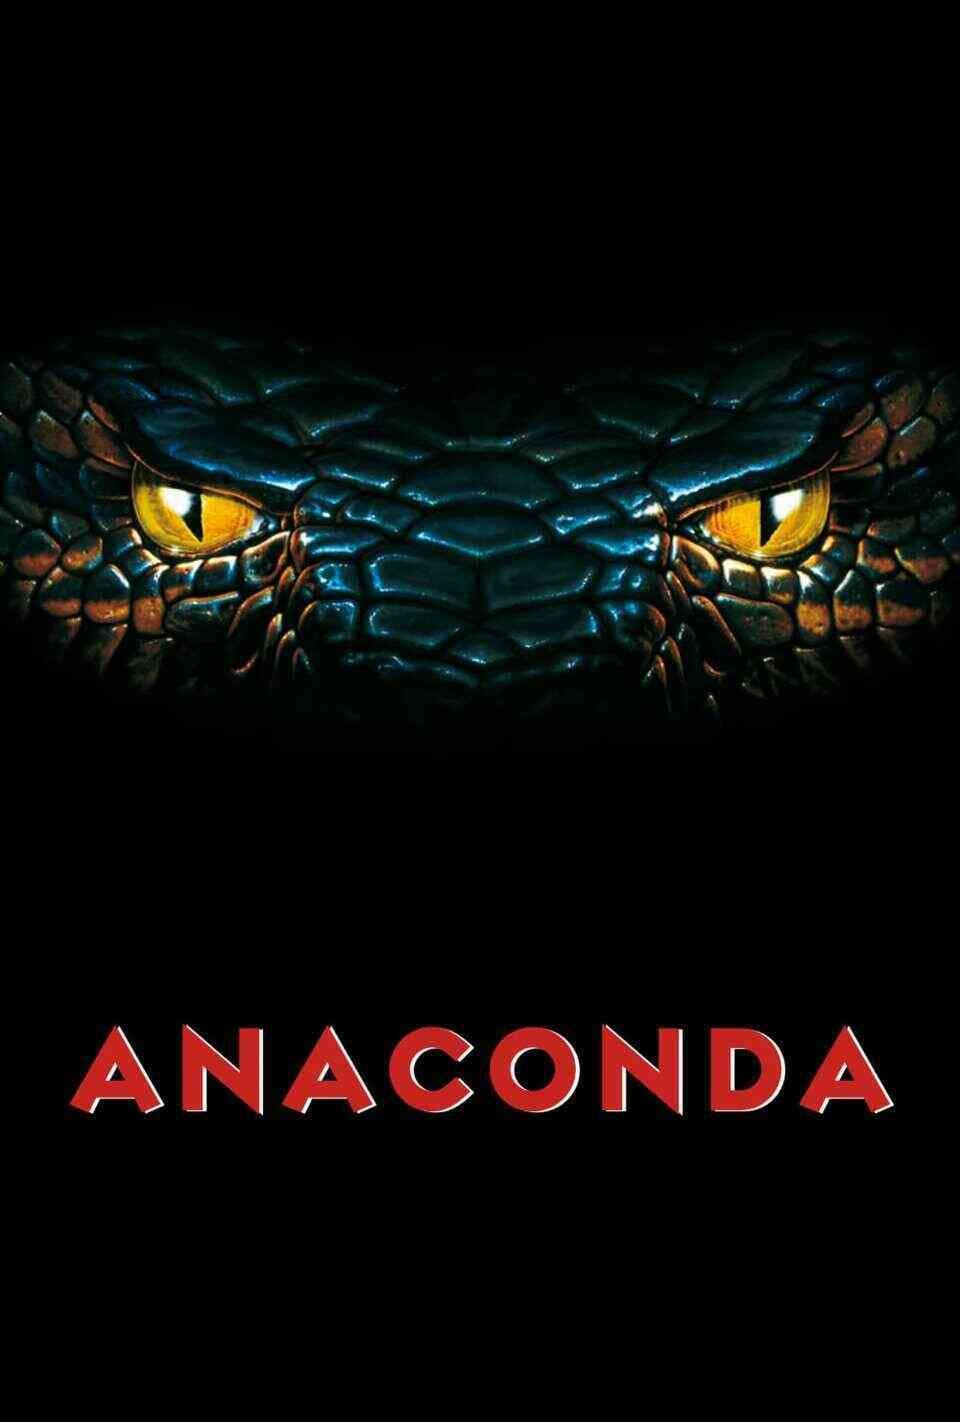 Read Anaconda screenplay.